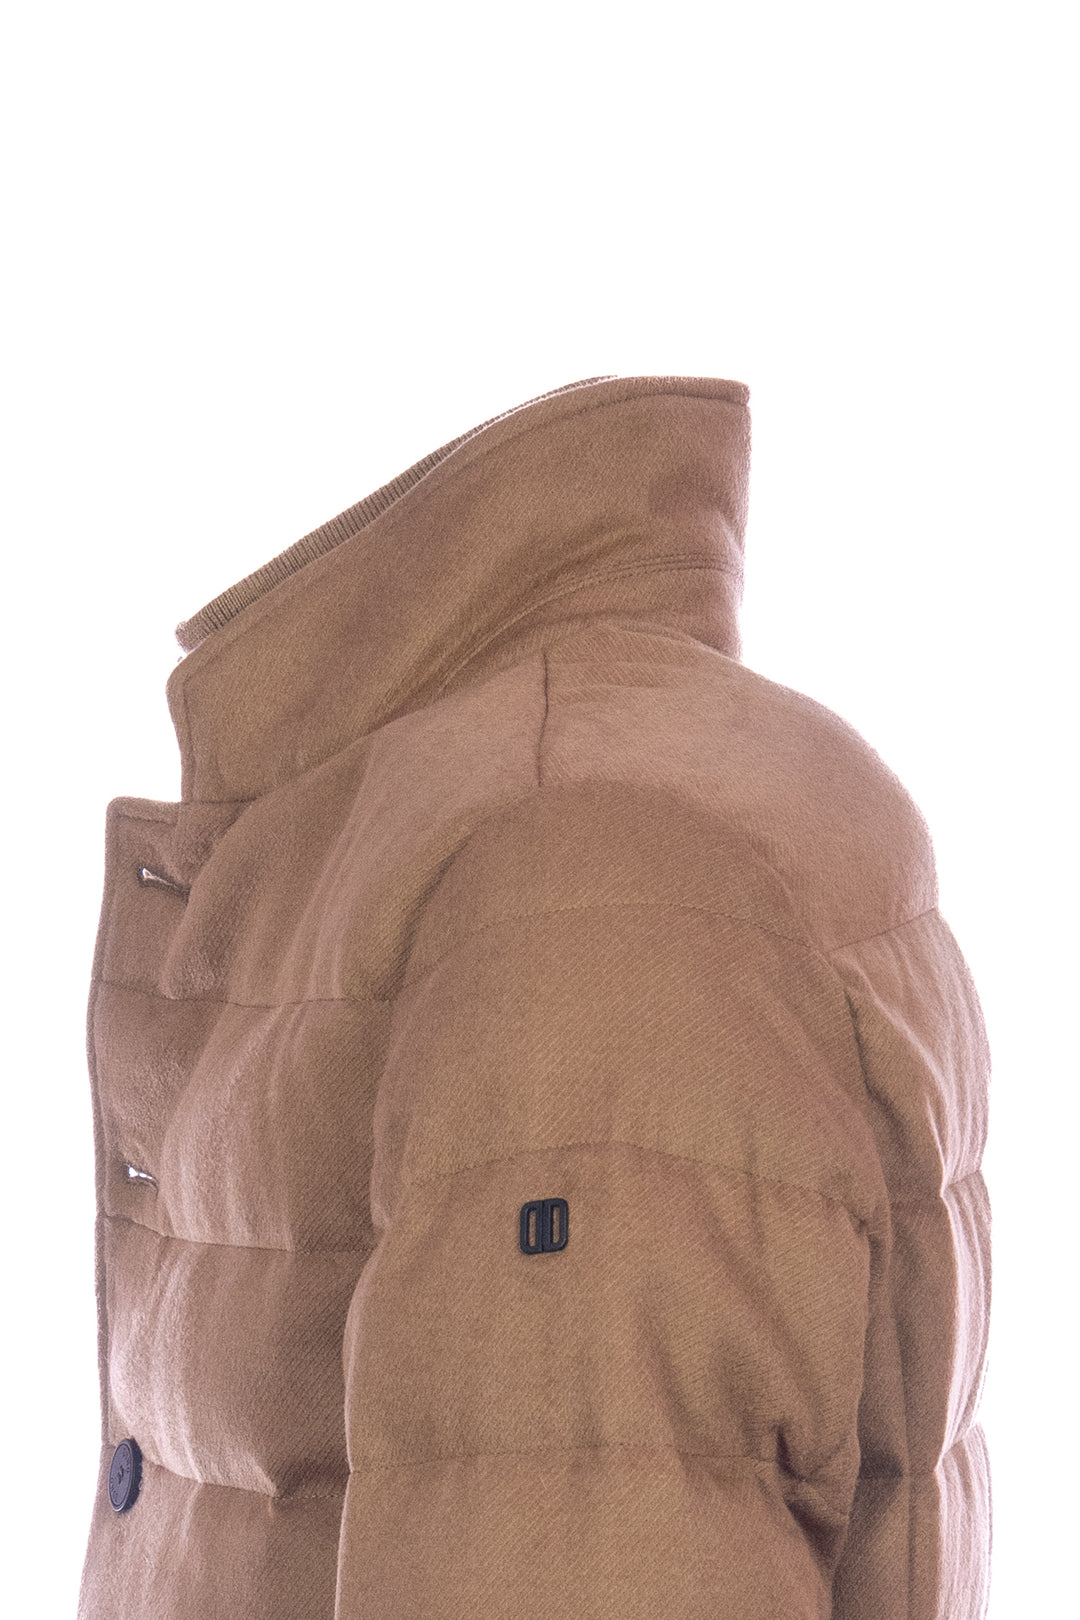 DUNO Giacca trapuntata marrone chiaro in lana tecnica con pettorina rimovibile - Mancinelli 1954